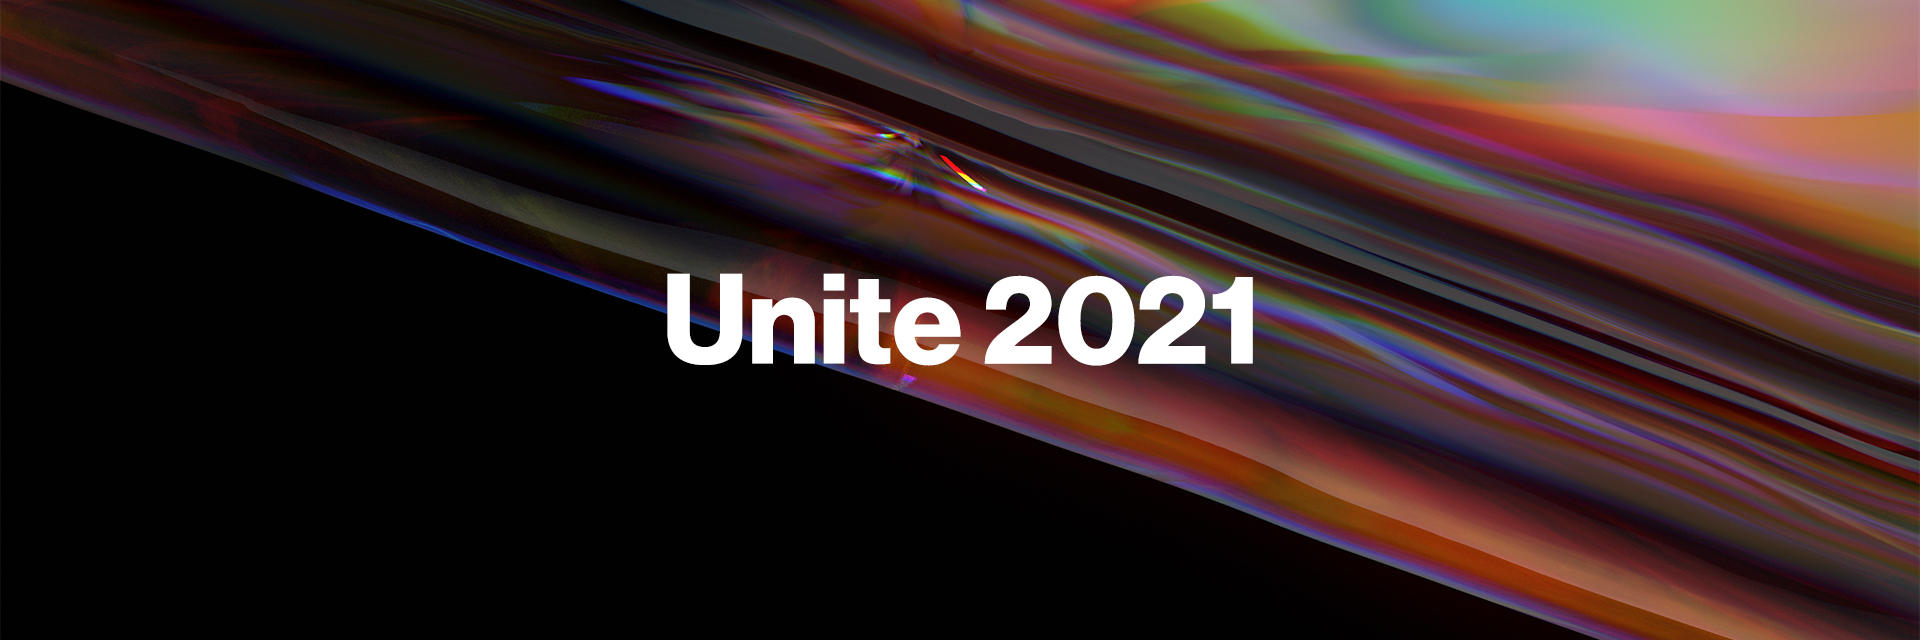 The future of Unite